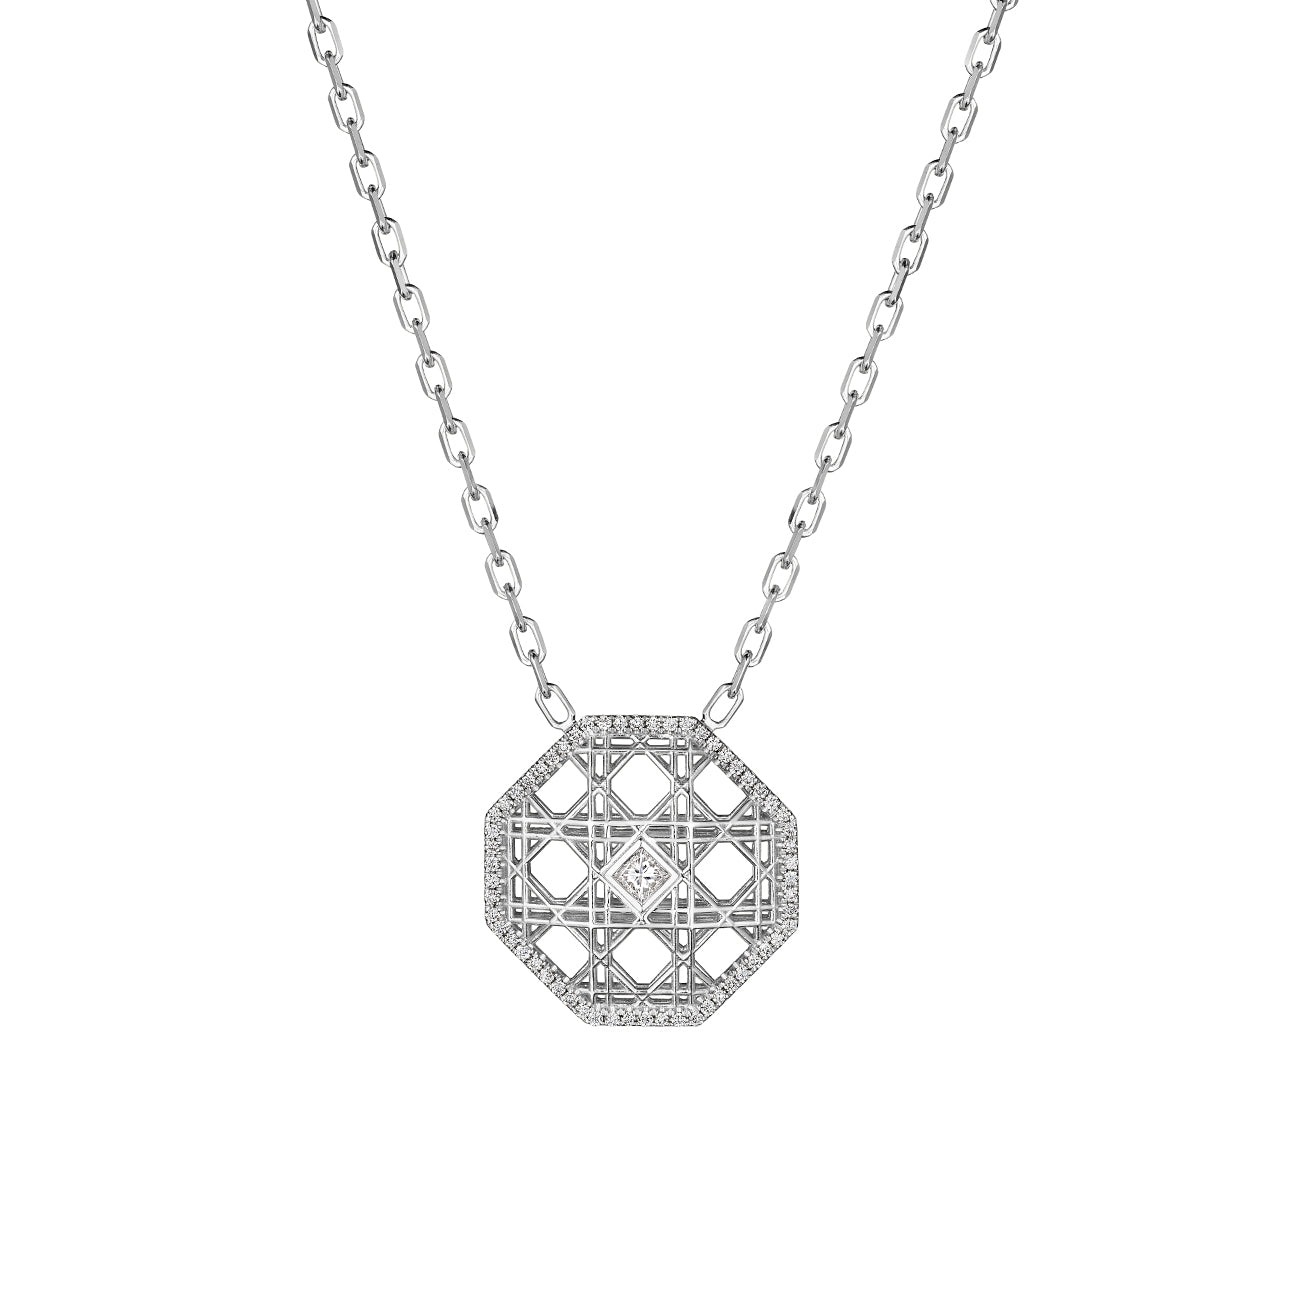 DouDou Pendant necklace, 18K White Gold, Pavé Diamonds And Princess Cut